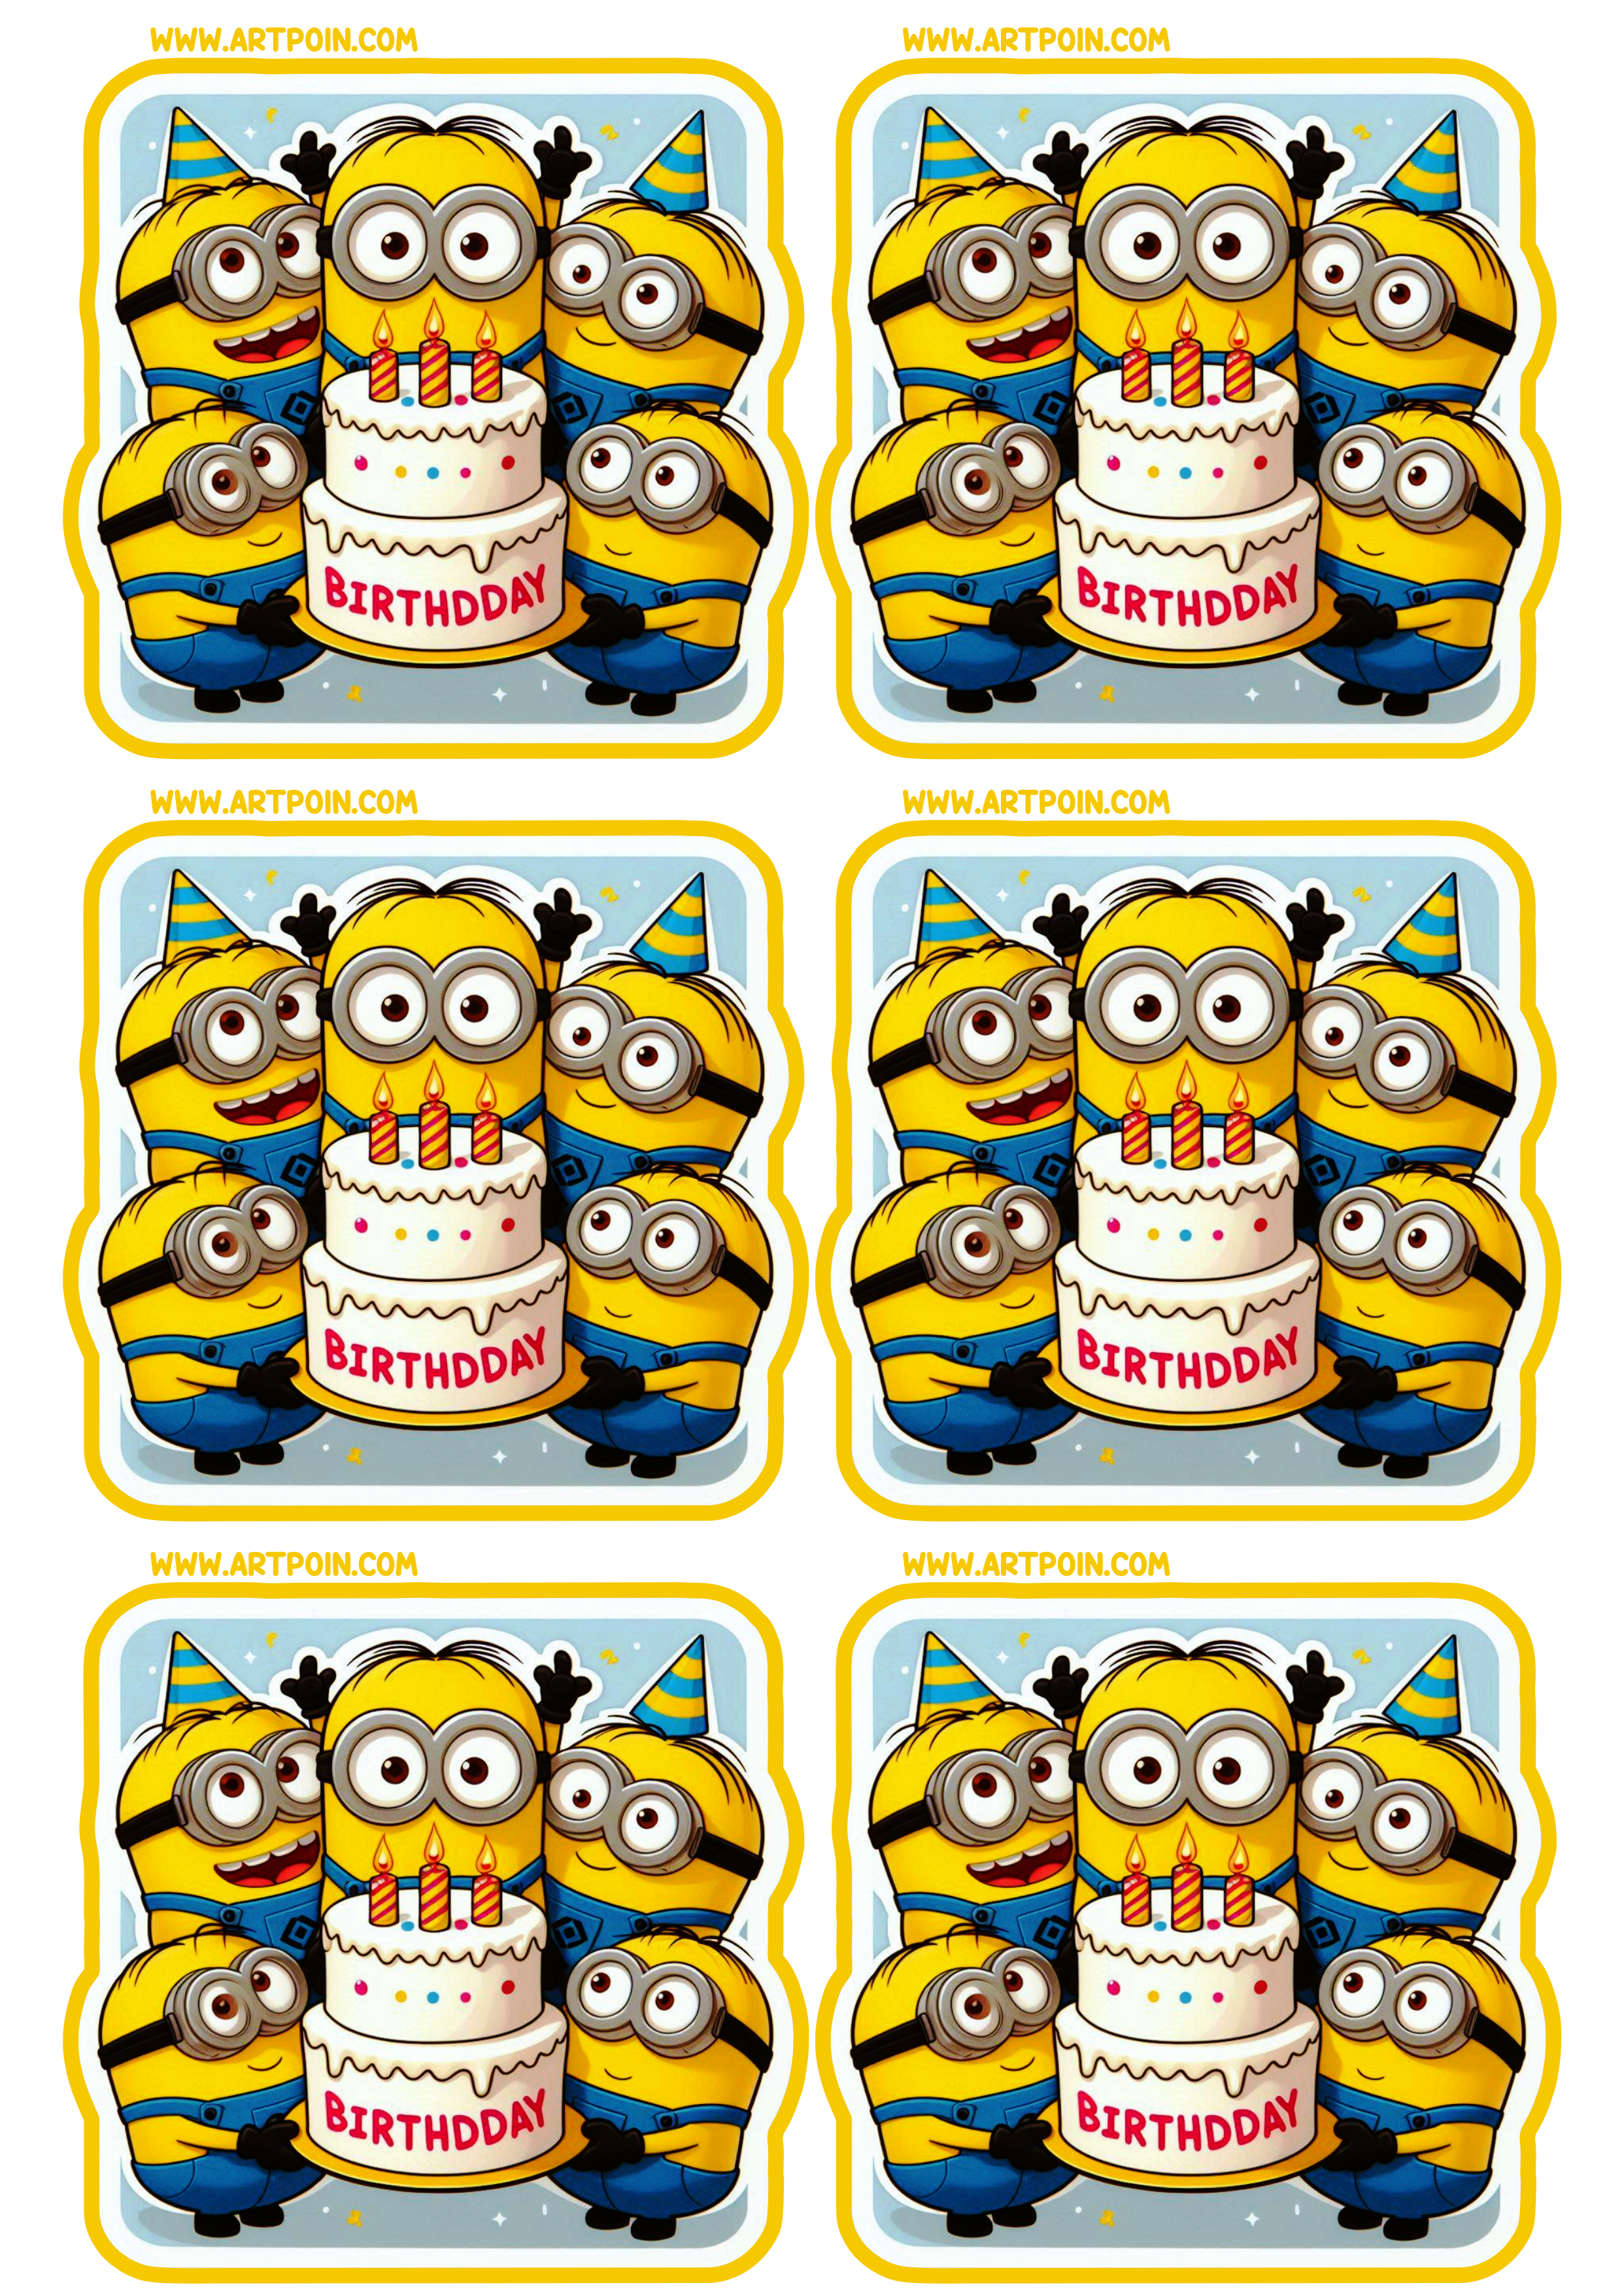 Minions adesivo quadrado para decoração de aniversário infantil pronta para imprimir papelaria criativa 6 imagens png